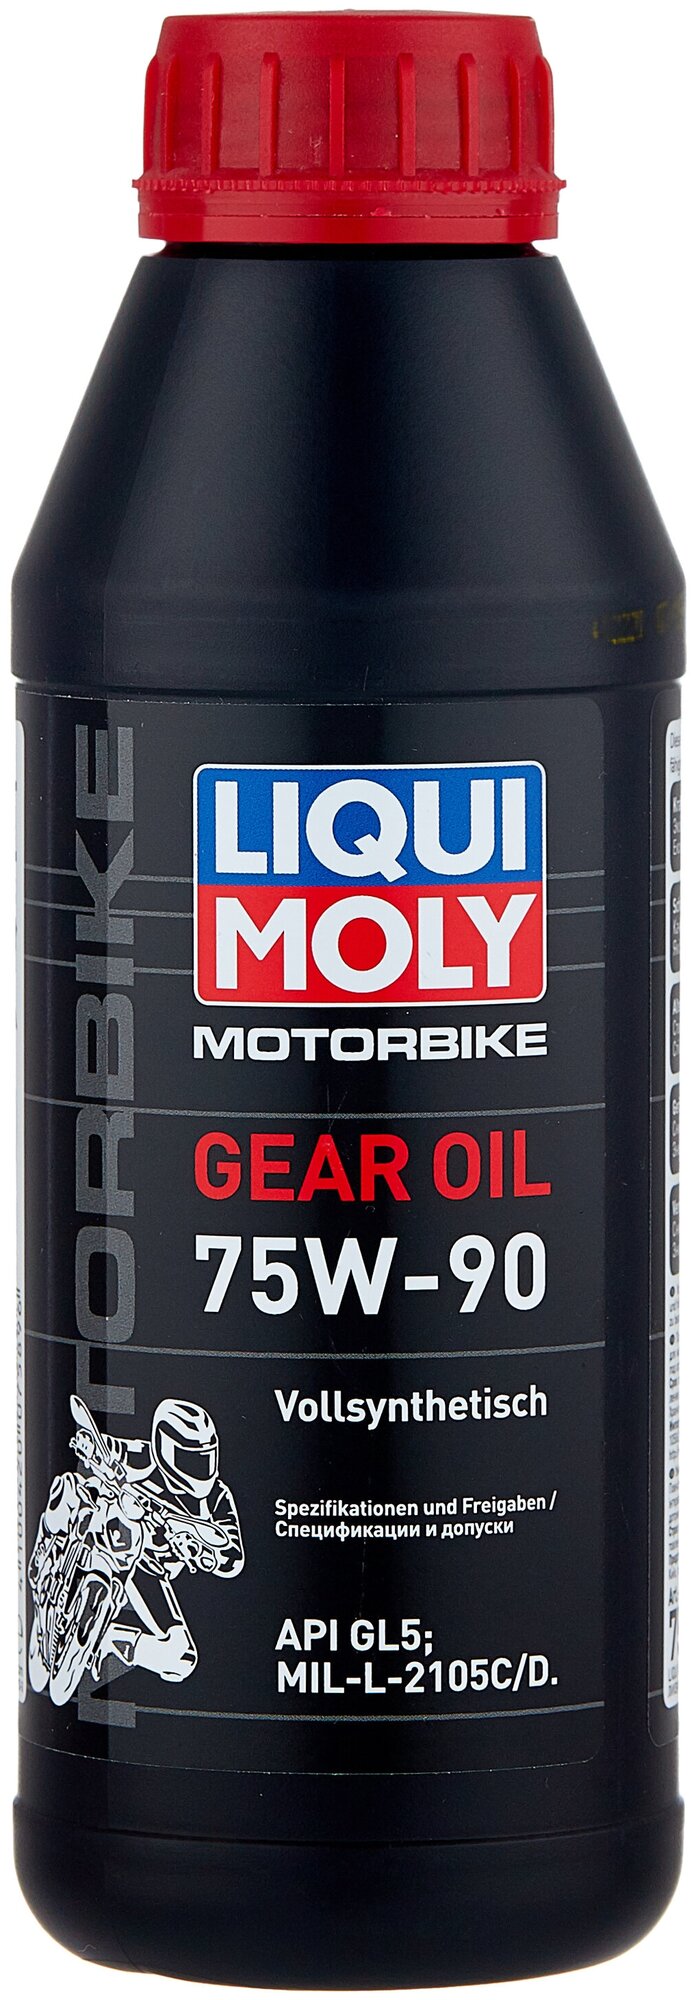 7589 liqui moly синтетическое трансмиссионное масло для мотоциклов motorbike gear oil 75w-90 gl-5 (0,5л)